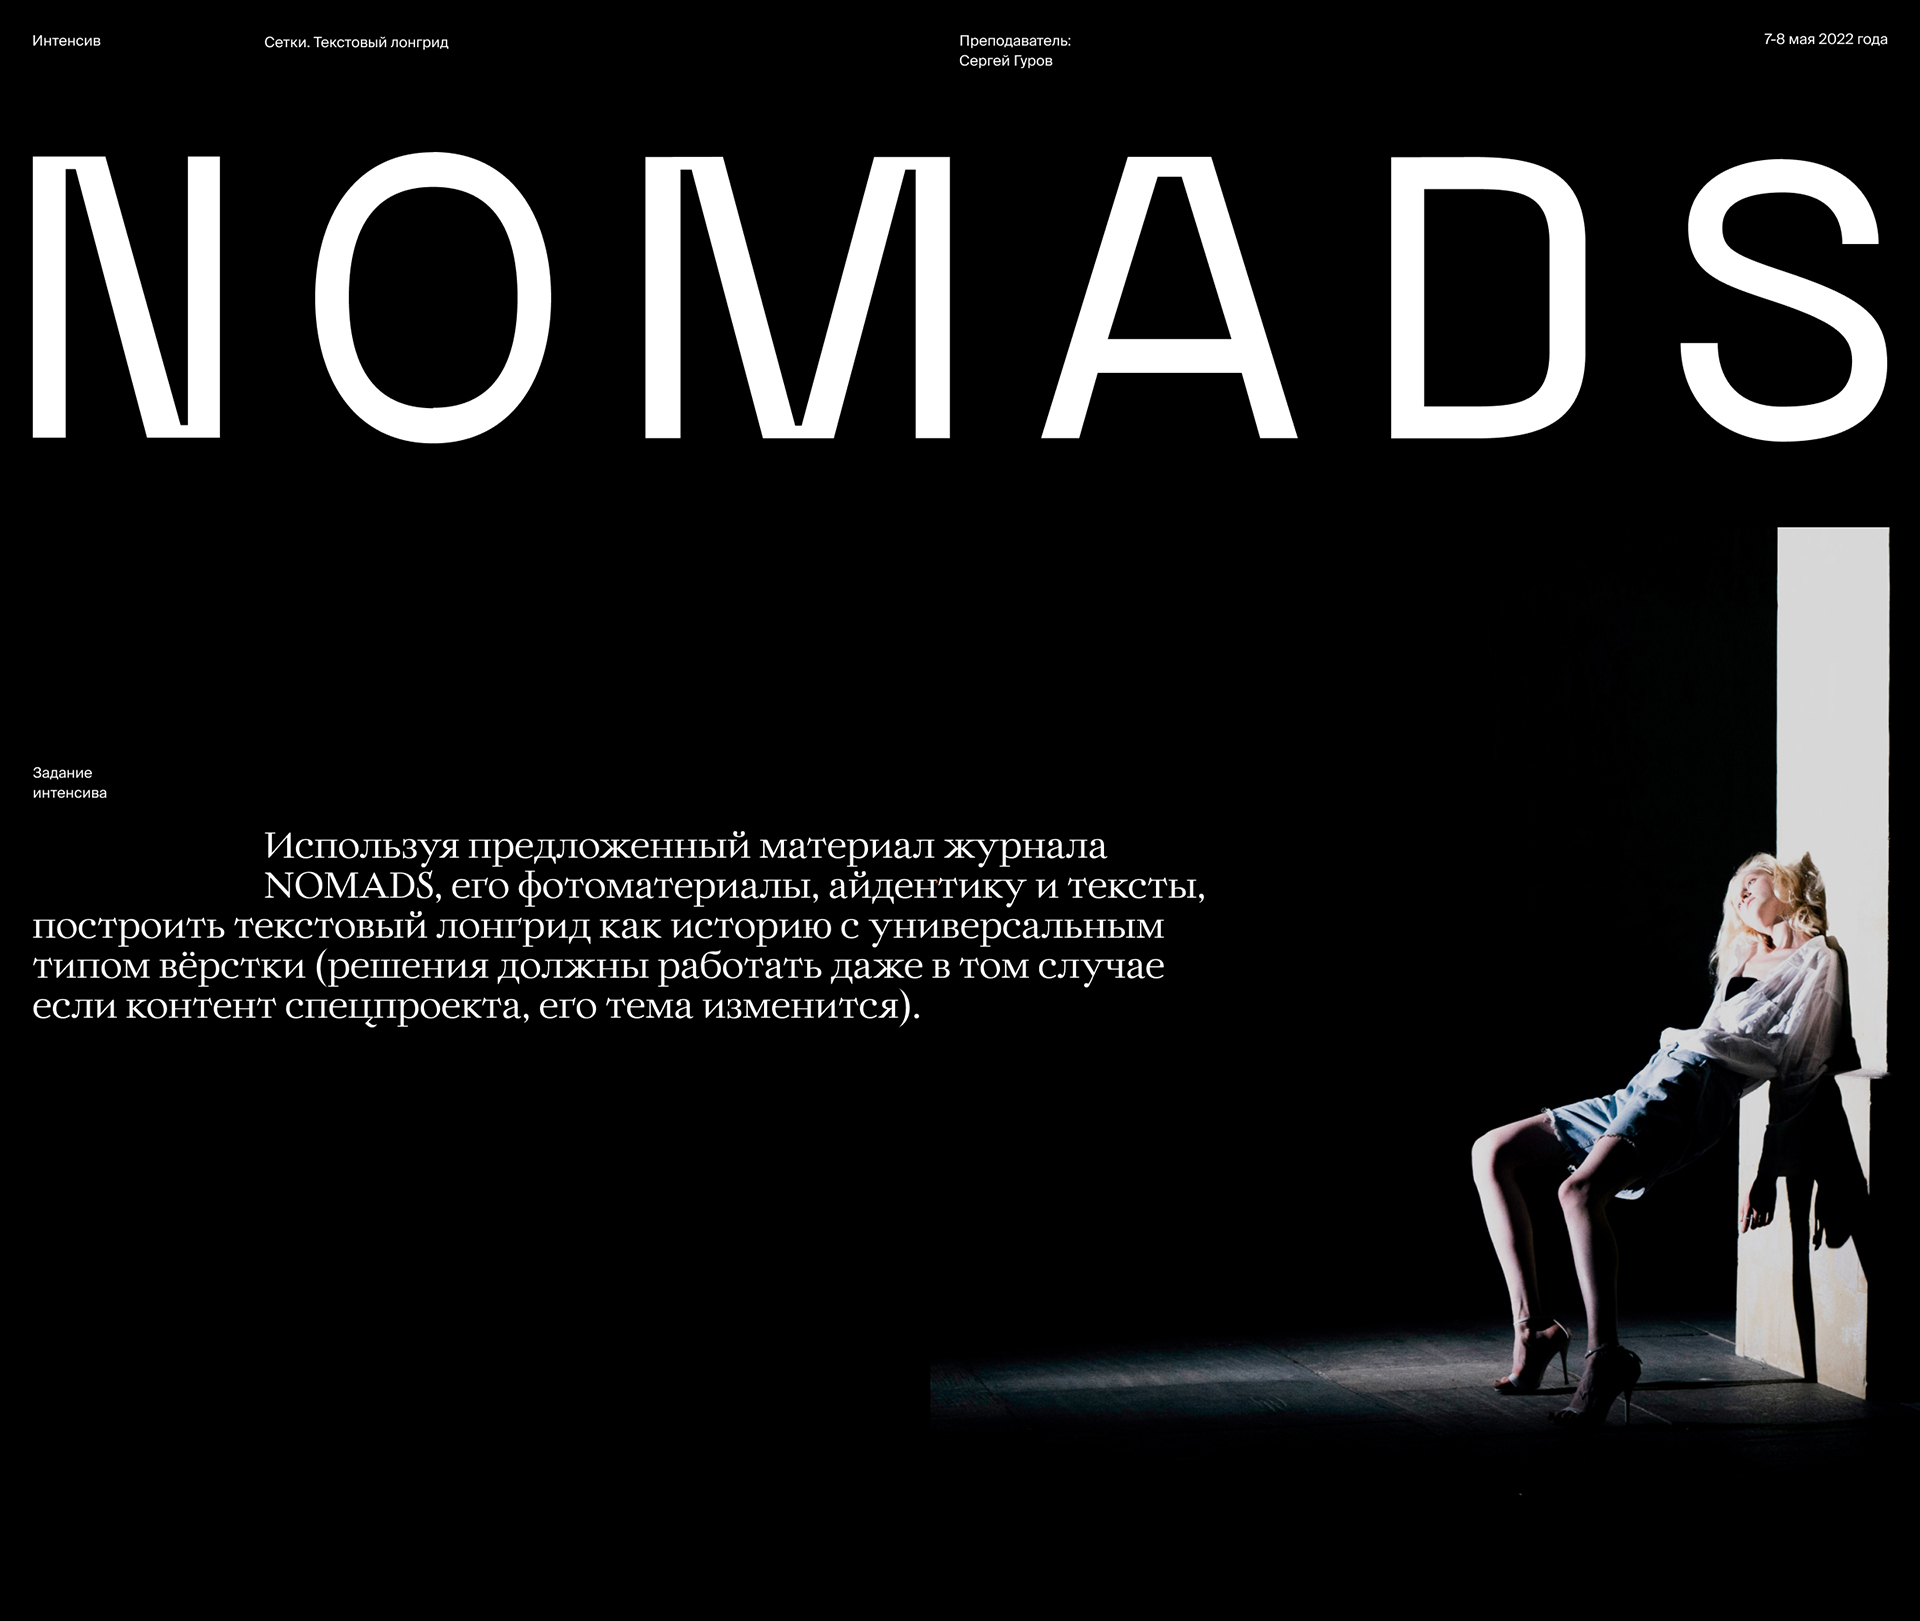 NOMADS текстовый лонгрид — Изображение №1 — Интерфейсы на Dprofile